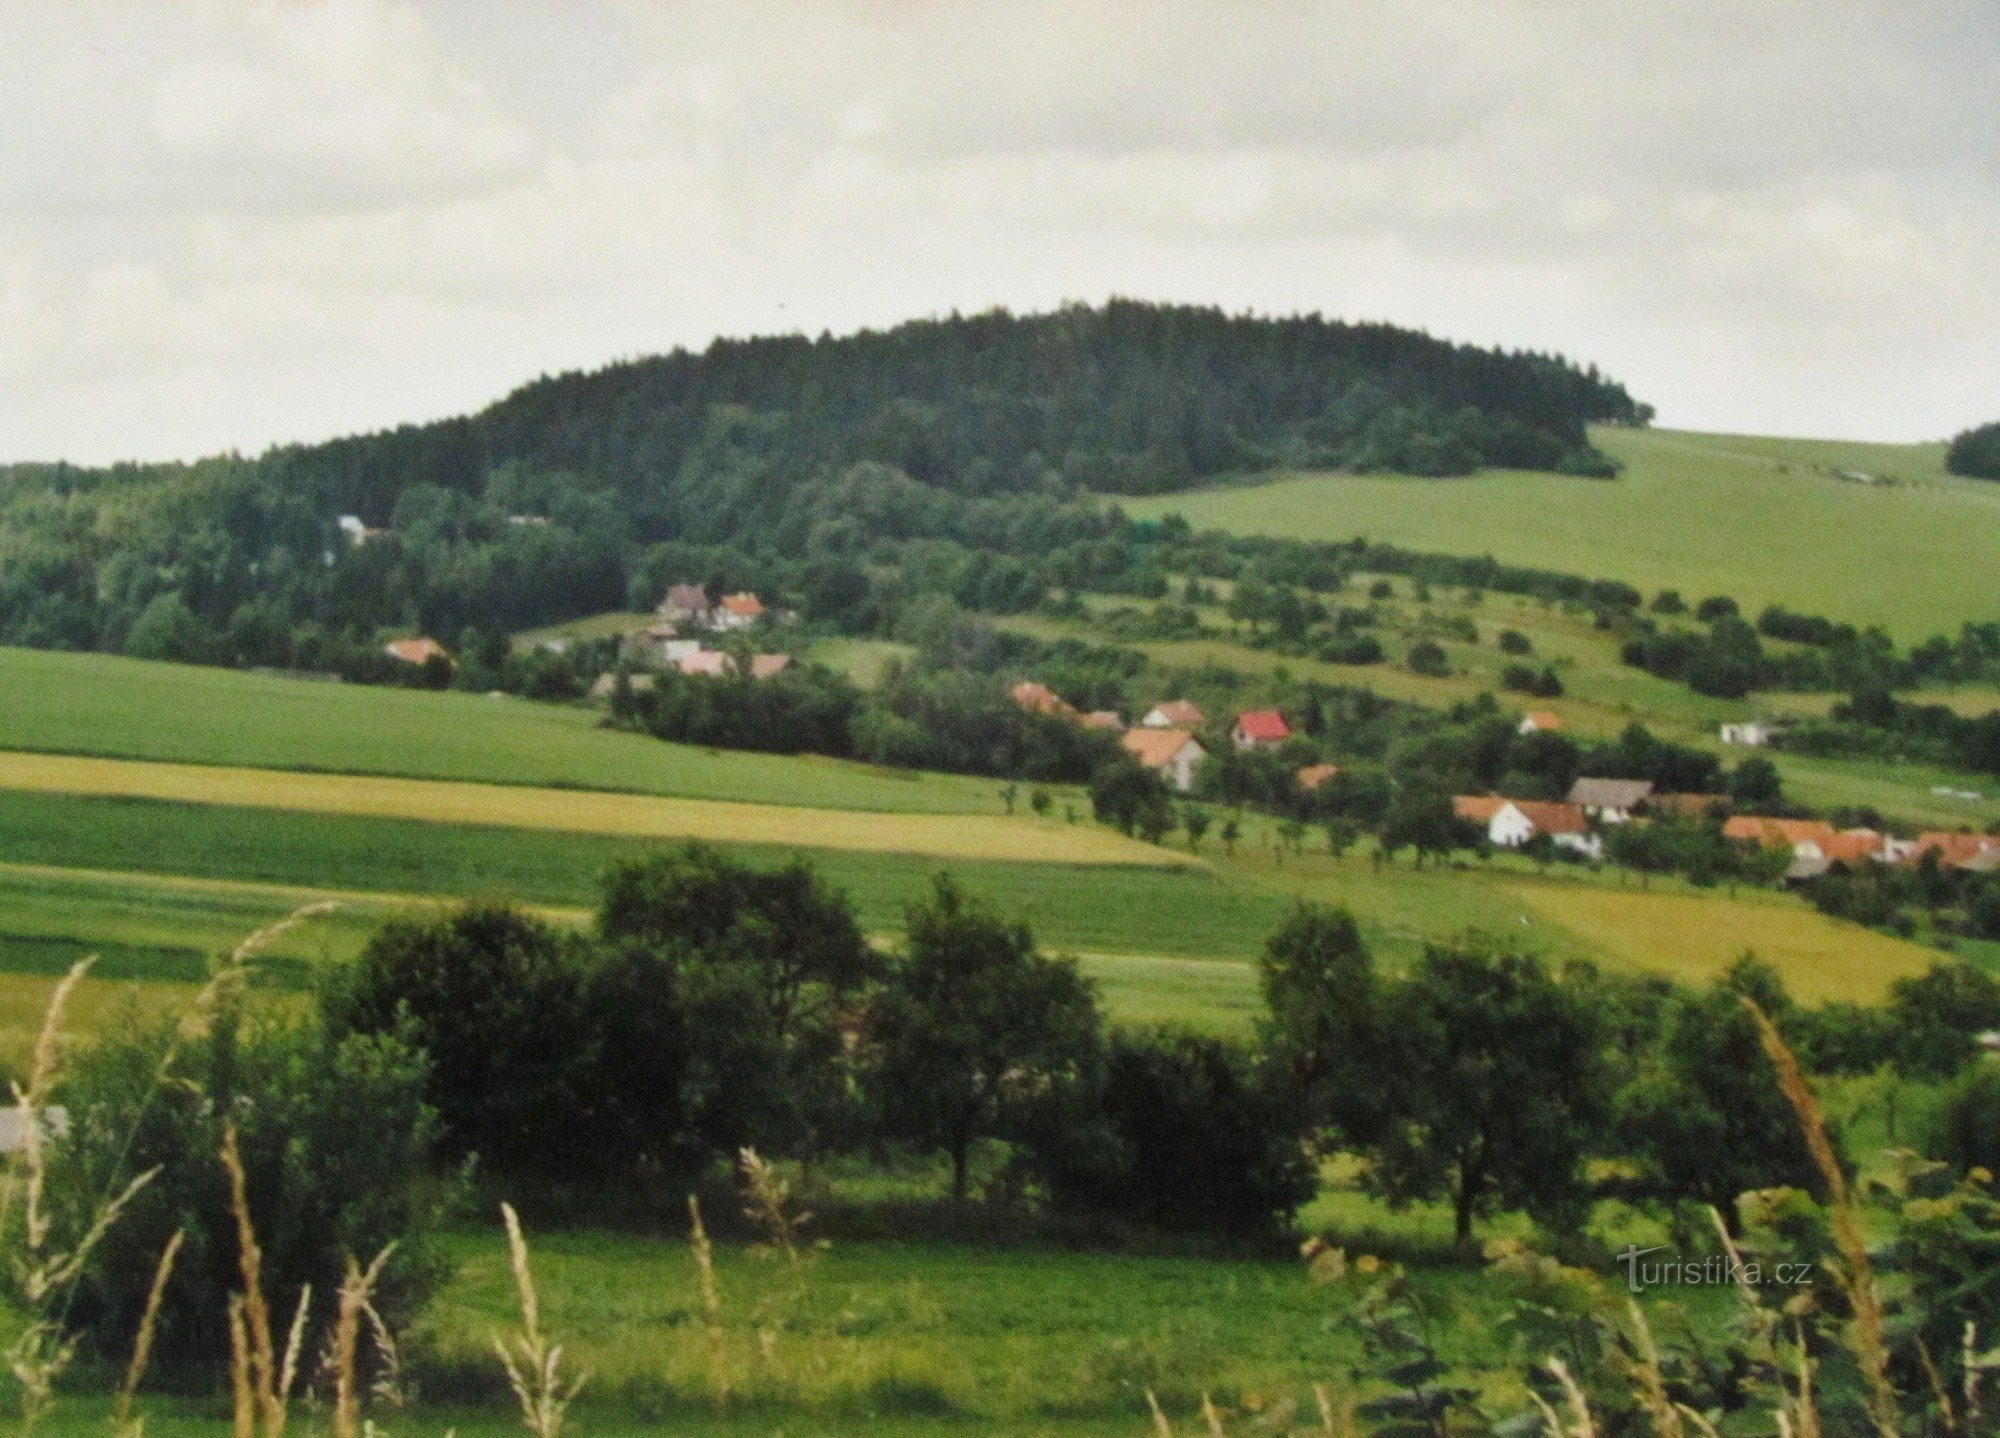 Călătorie în Highlands - 2. De la Sloup prin Rájec și Černá Hora până la Lysice - retro 2001